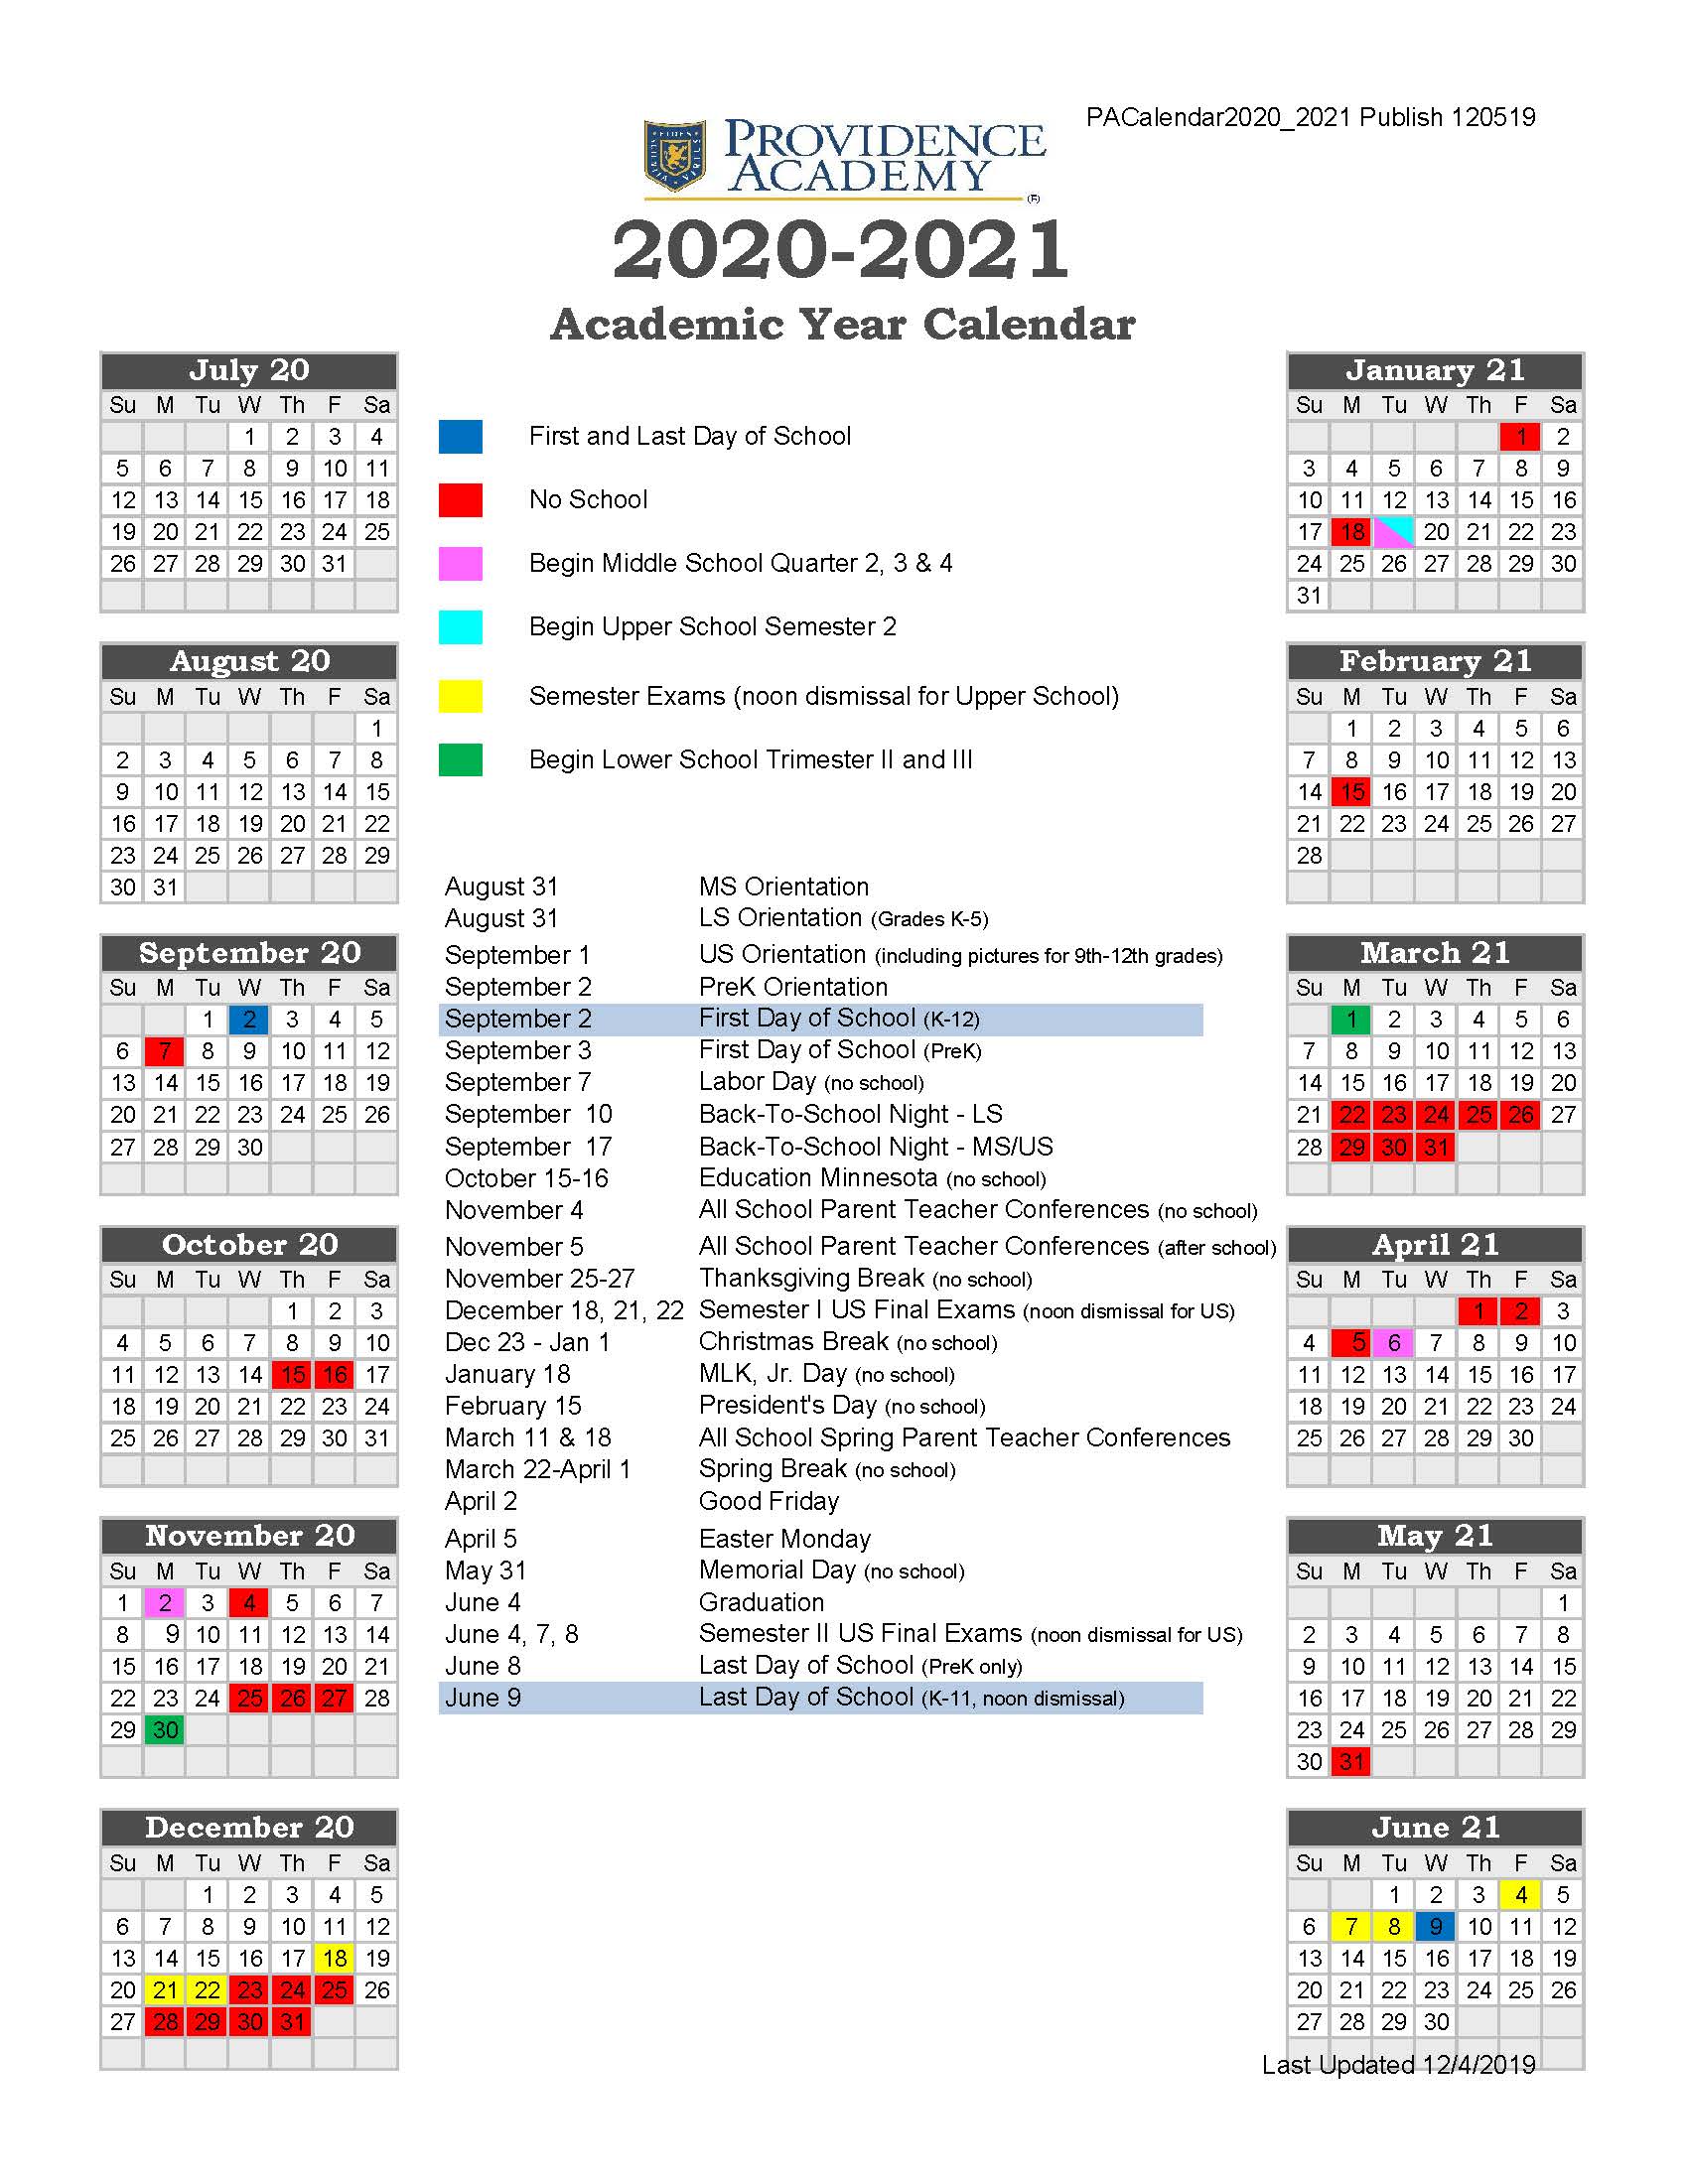 School Calendar 2021 19 19 20_Providence Academy Academic Calendar 2020 2021   Providence 